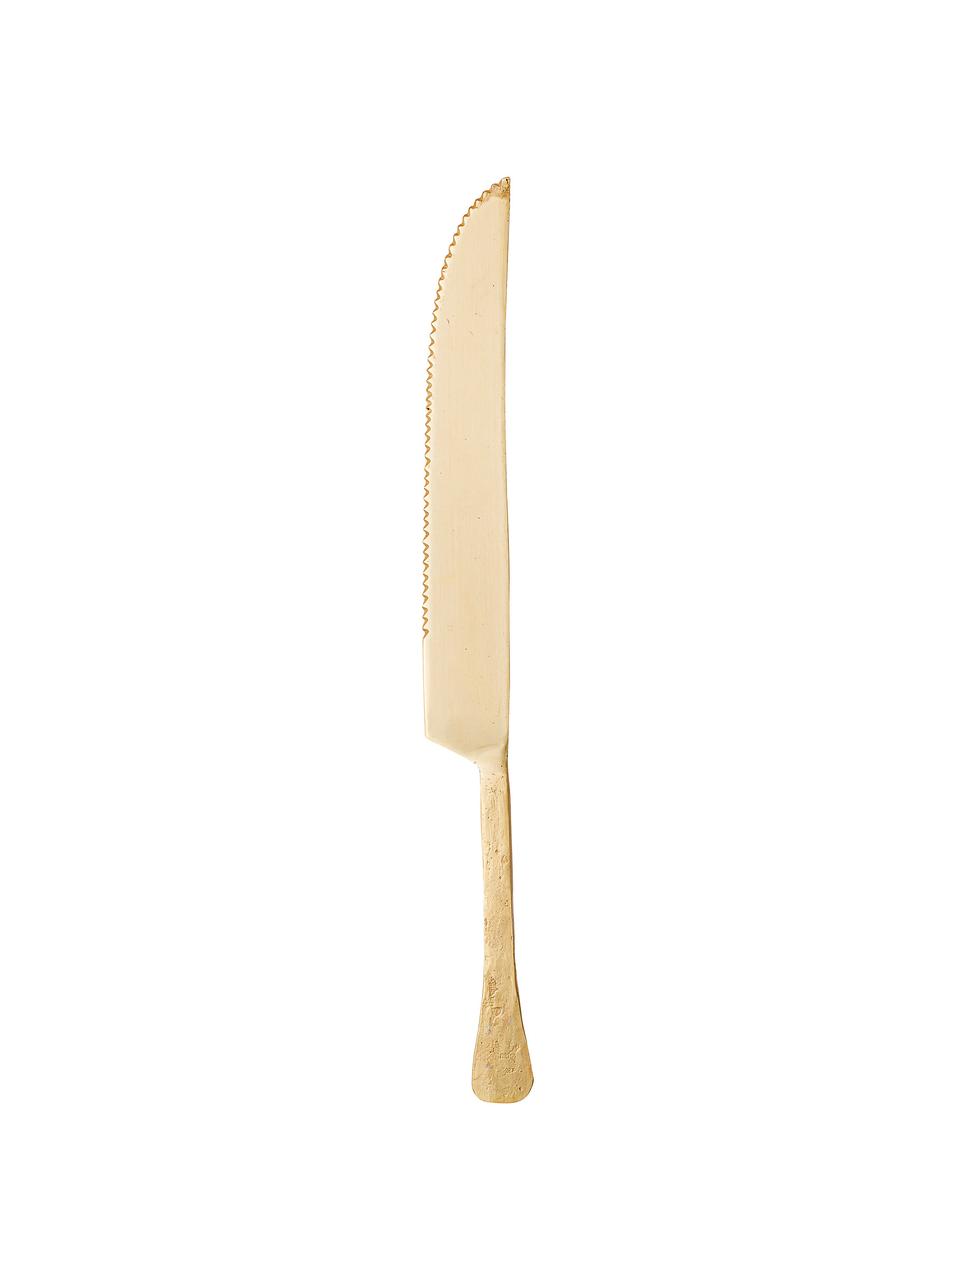 Dortový nůž  Moni, Nerezová ocel 14/1, lakovaná

Příbory jsou vyrobeny z nerezové oceli. Jsou pevné, nerezaví a jsou odolné vůči bakteriím., Mosazná, D 31 cm